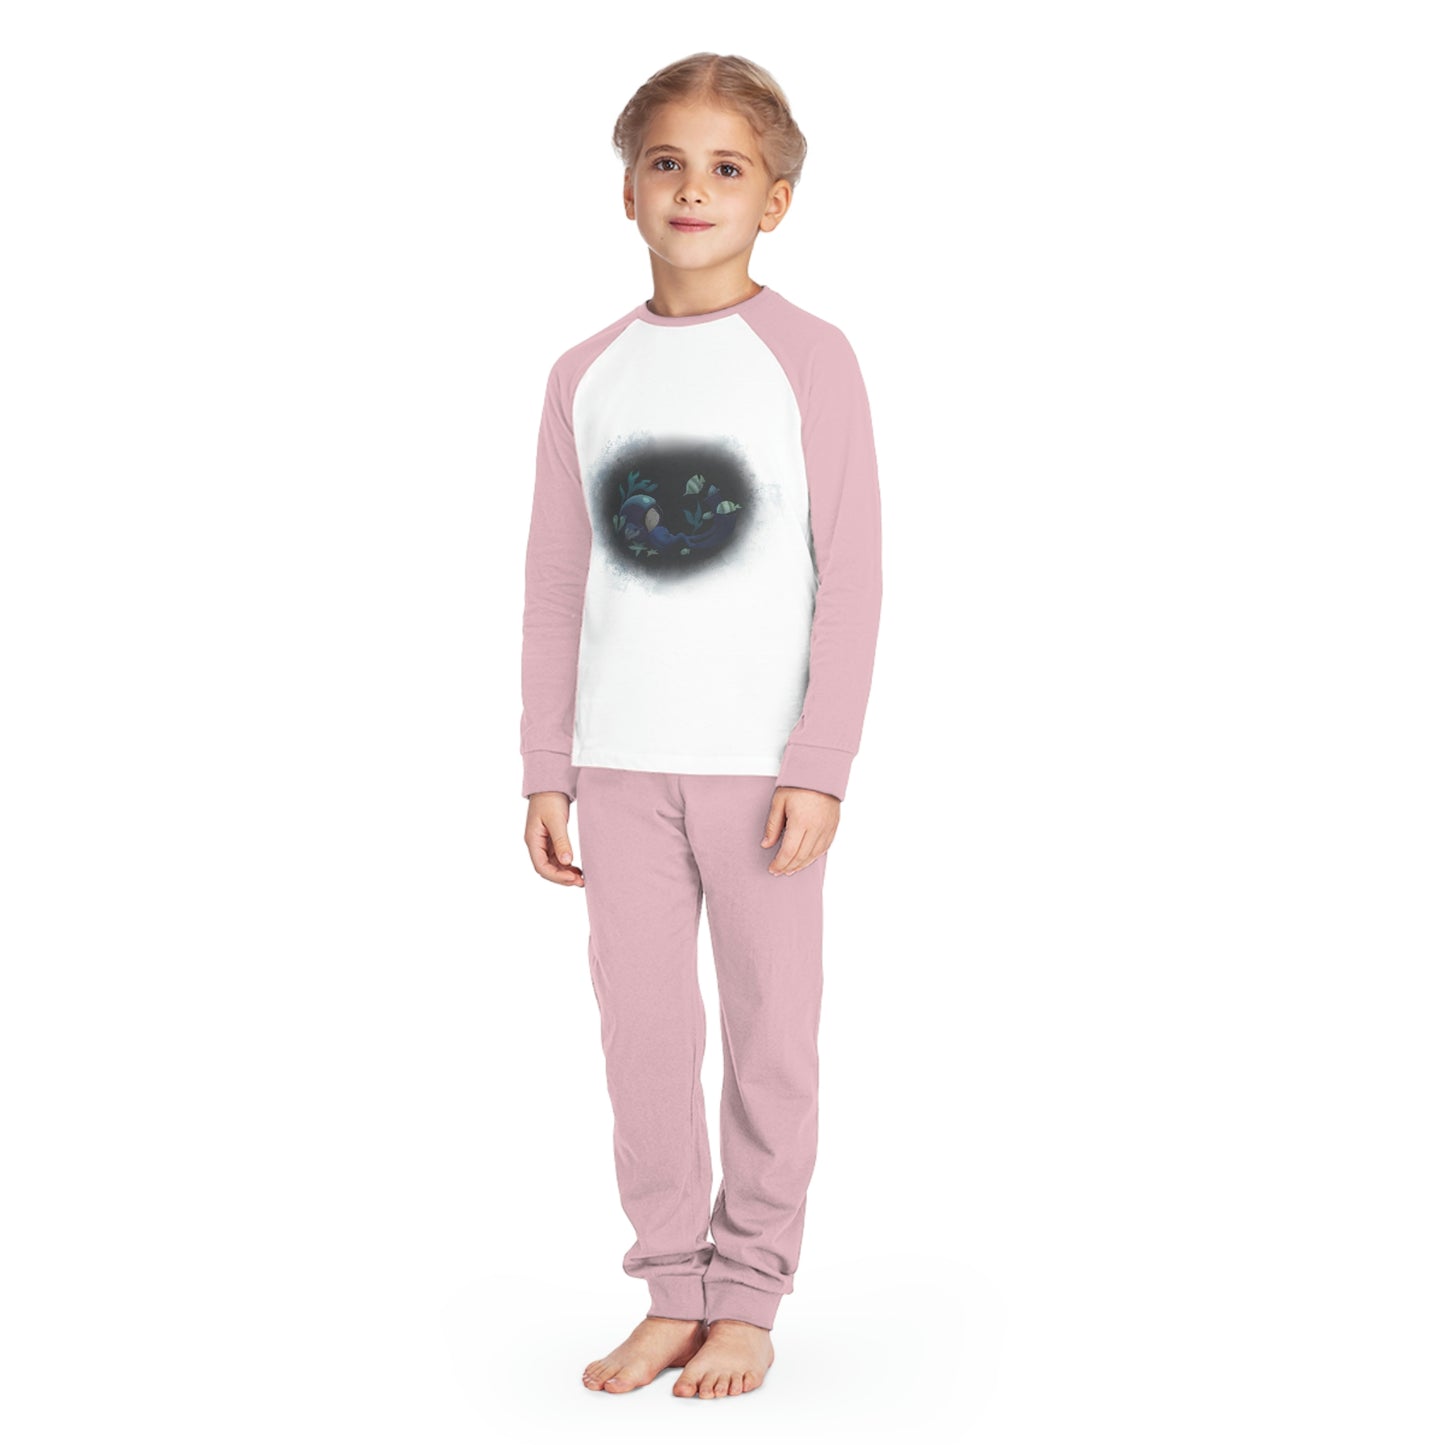 Kids' Pyjama Set - The Child